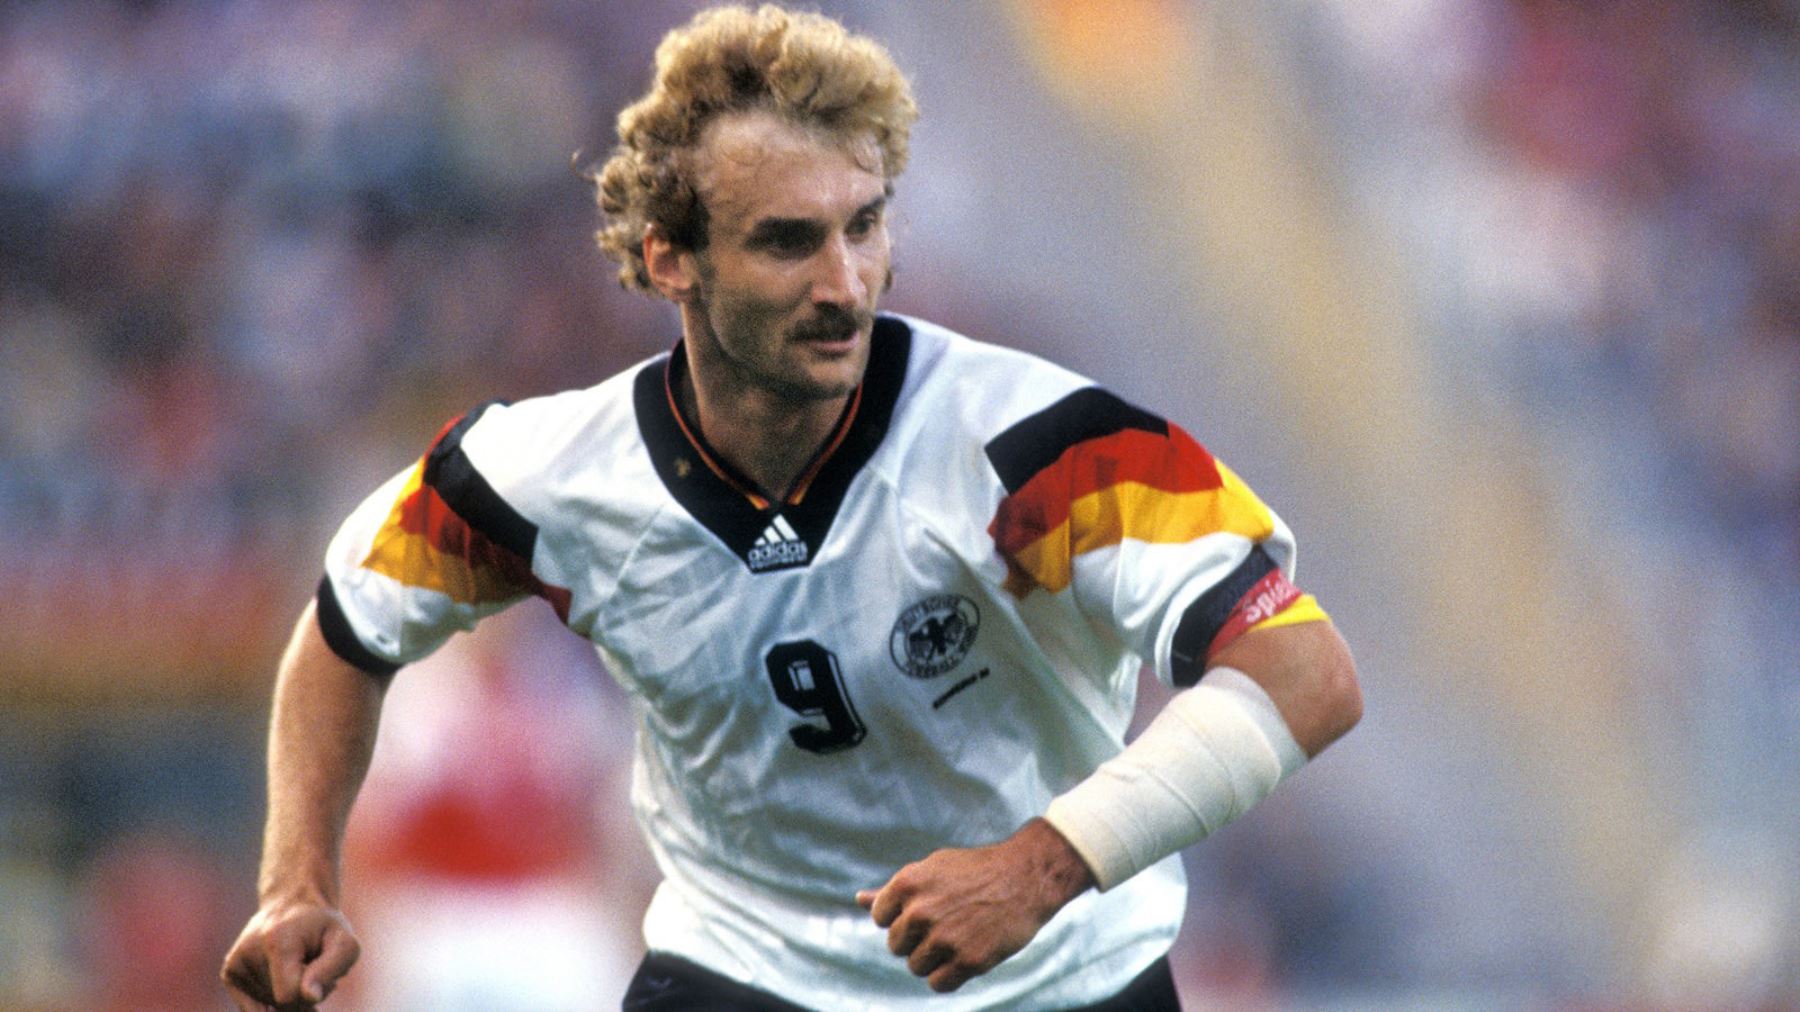 Rudi Völler - República Federal de Alemania/ Alemania. Ocho goles en 15 partidos. Participó en los mundiales de 1986, 1990 y 1994. Fue campeón en el Italia 1990.